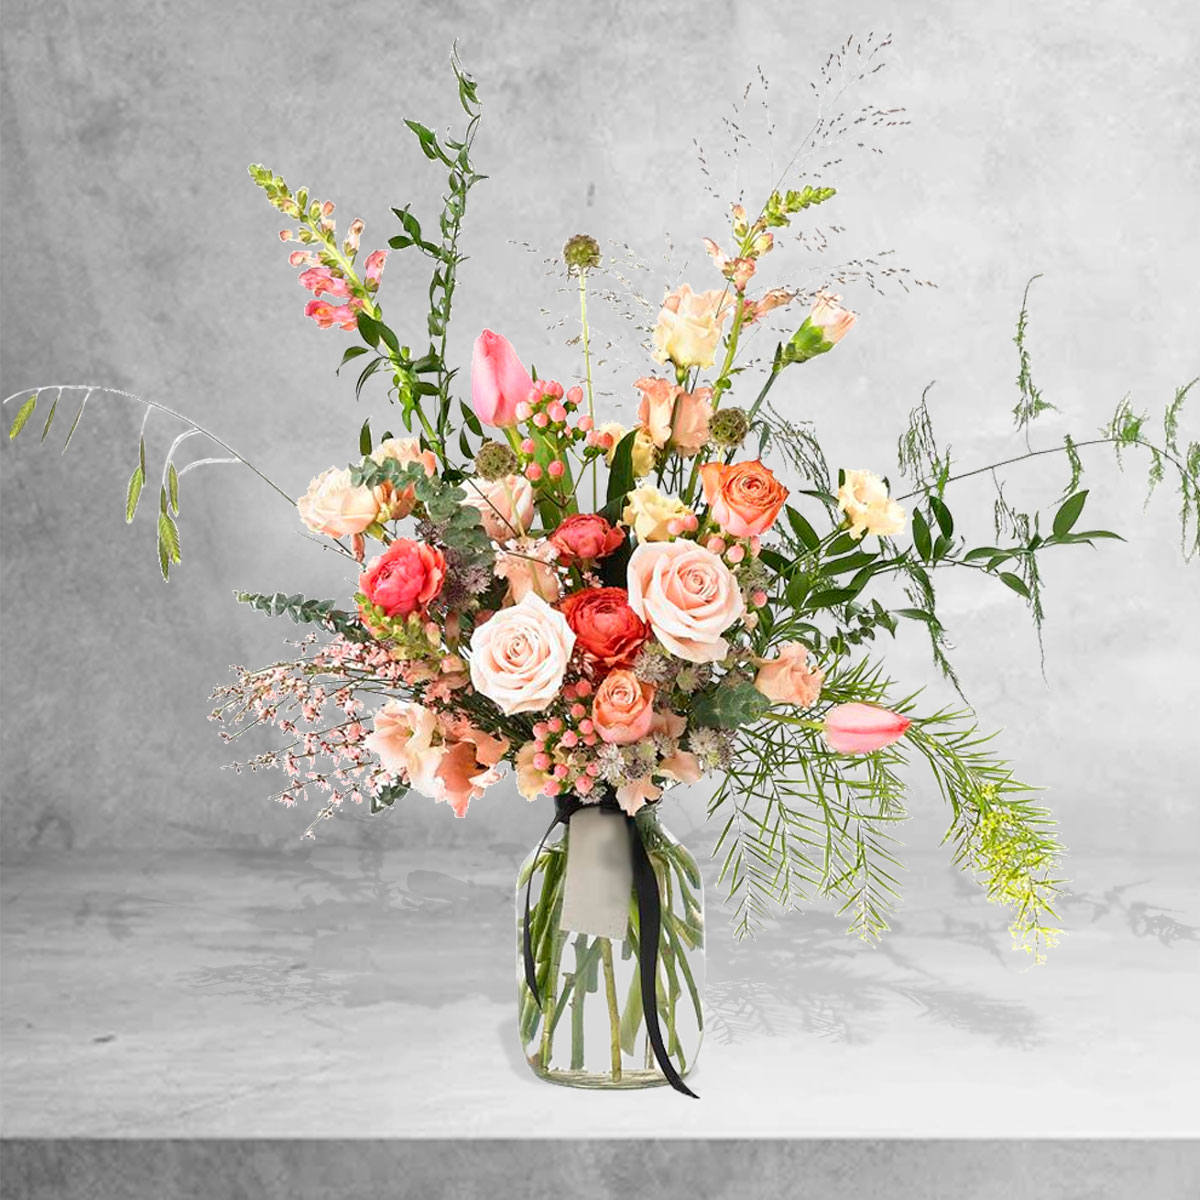 Jarra Romantic - Floristas, entrega de flores lisboa